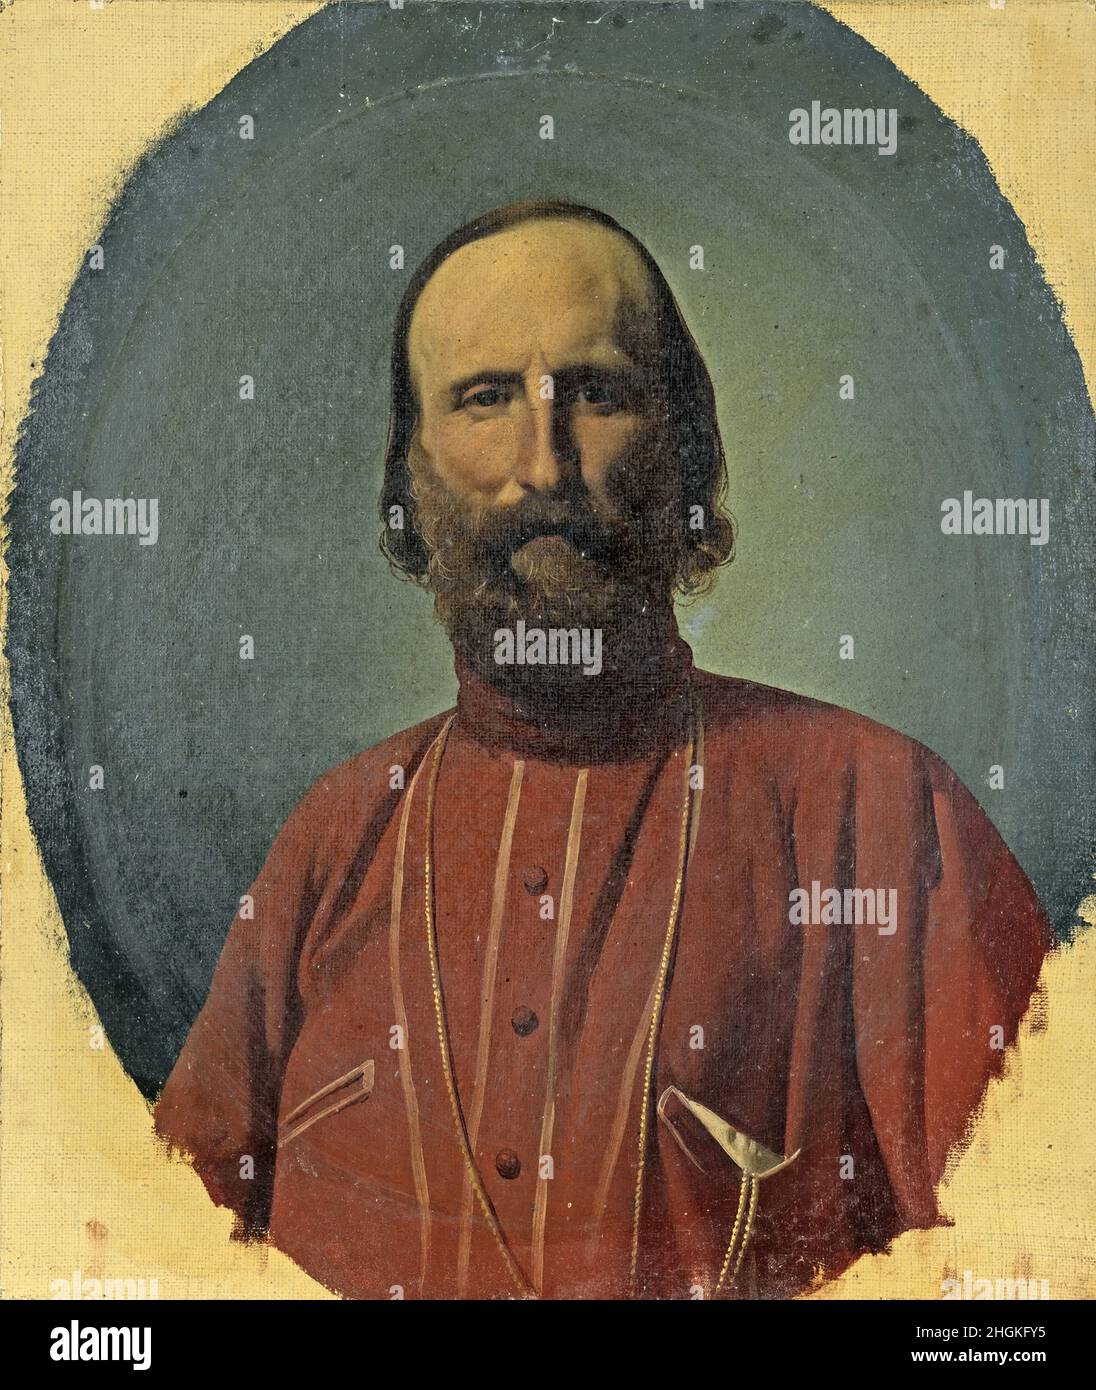 Chierici Gaetano - Private Collection - Portrait of Giuseppe Garibaldi - 1865 70 - oil on canvas 34 x 28 cm - Stock Photo